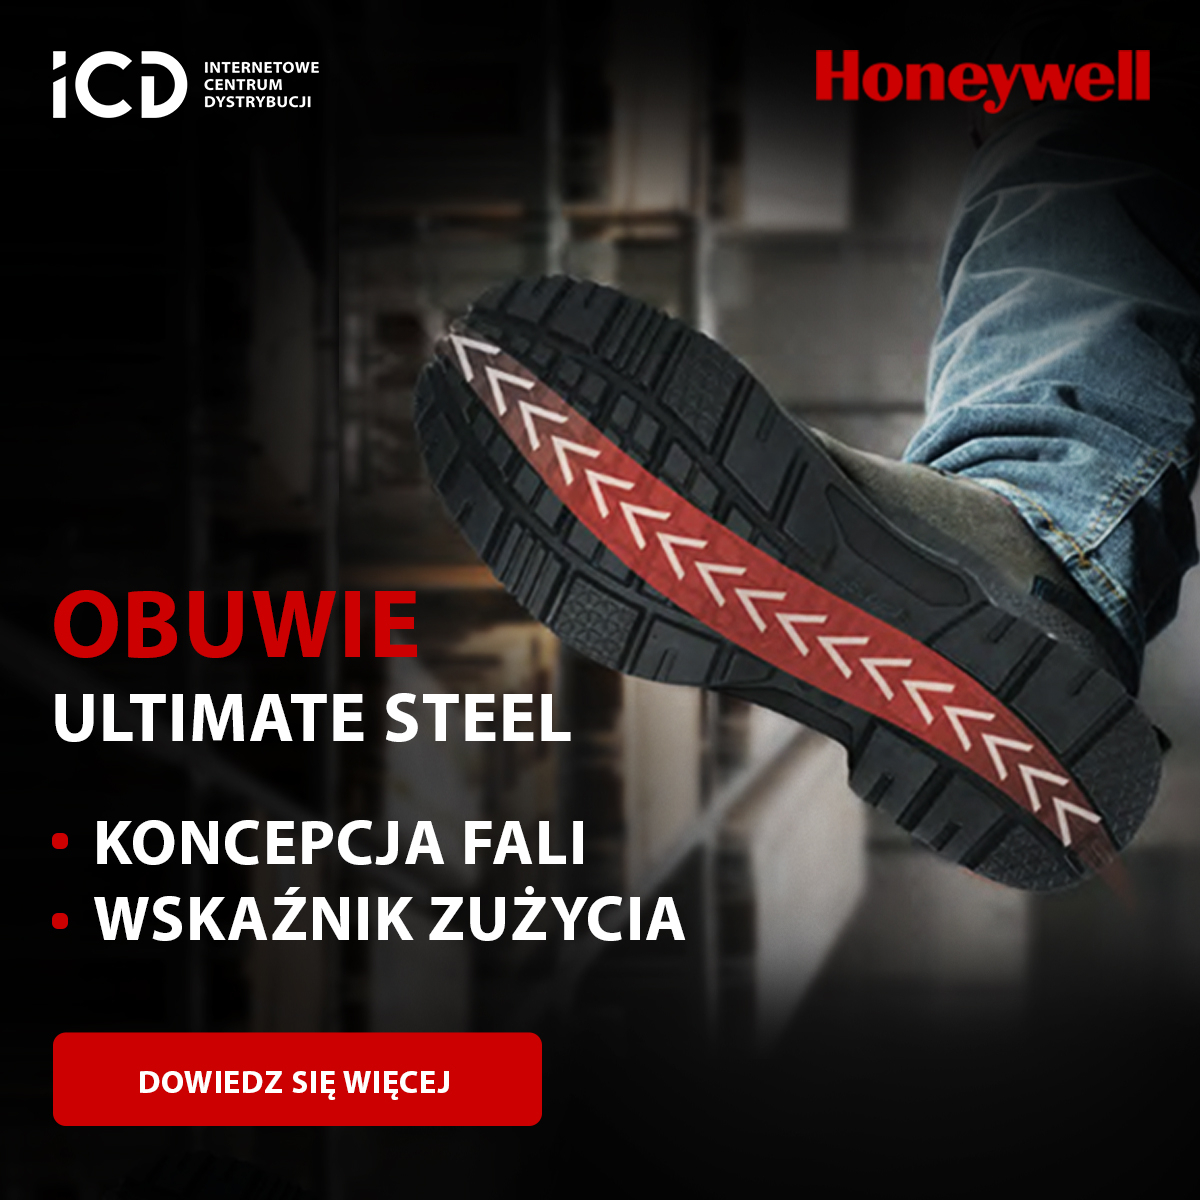 Obuwie Honeywell Ultimate & Ultimate Steel